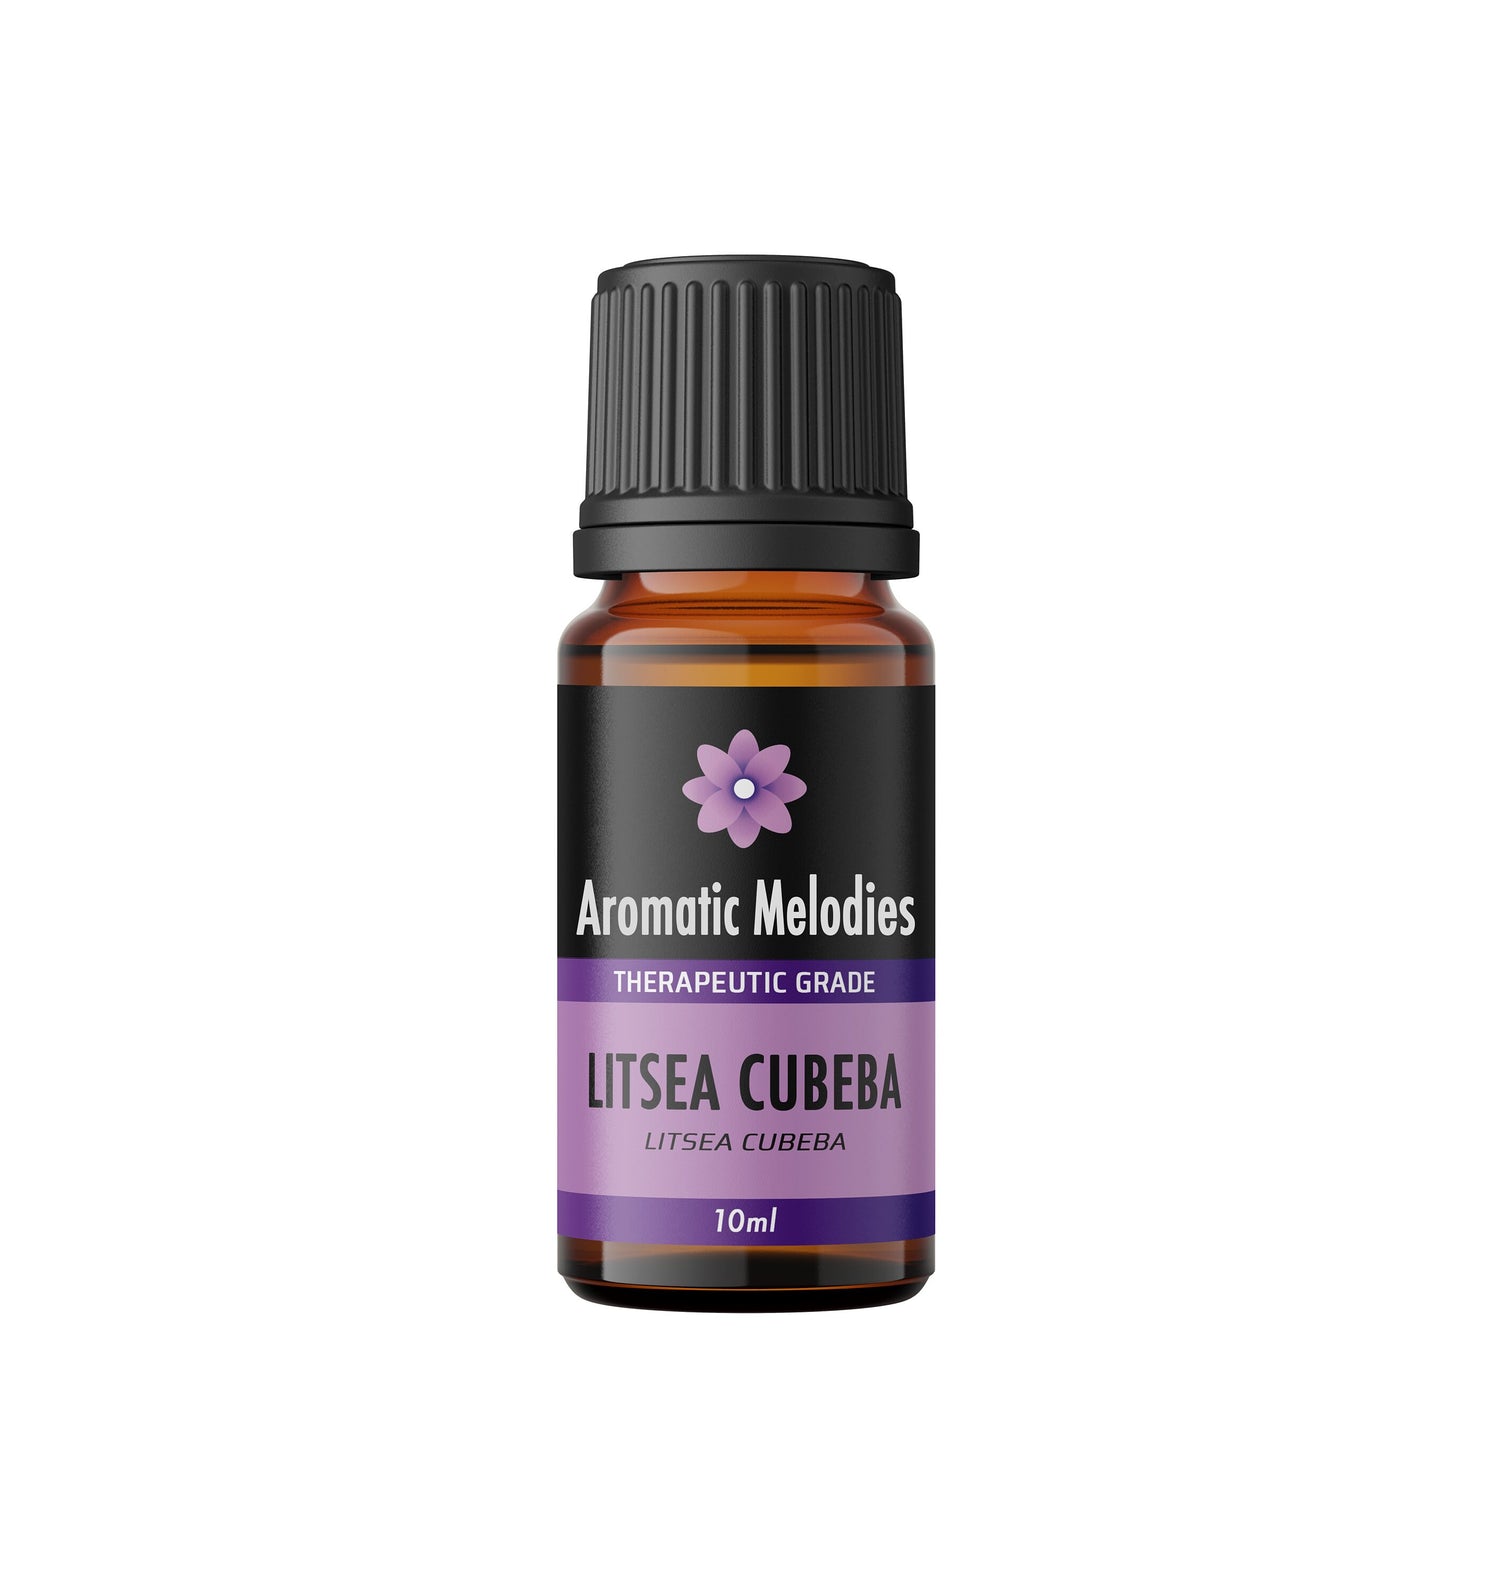 Litsea Cubeba Essential Oil - Premium 100% Natural Therapeutic Grade - Oil Diffuser, Massage, Fragrance, Soap, Candles